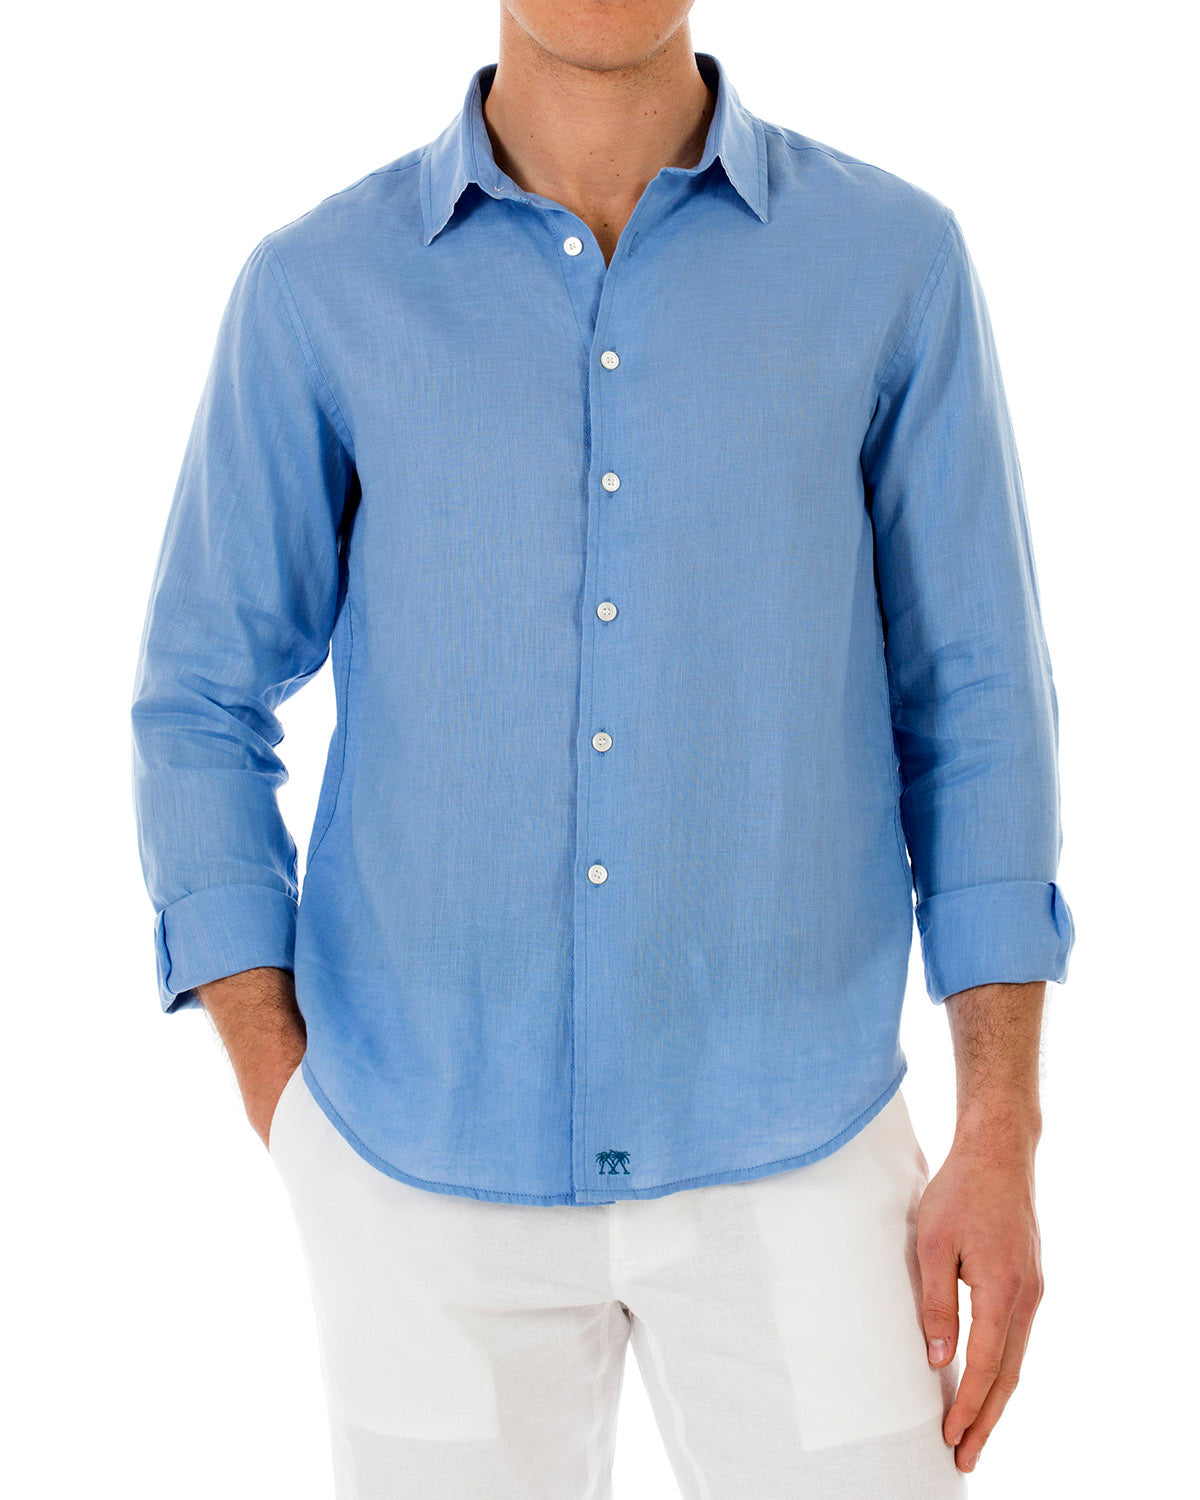 mens blue linen shirt